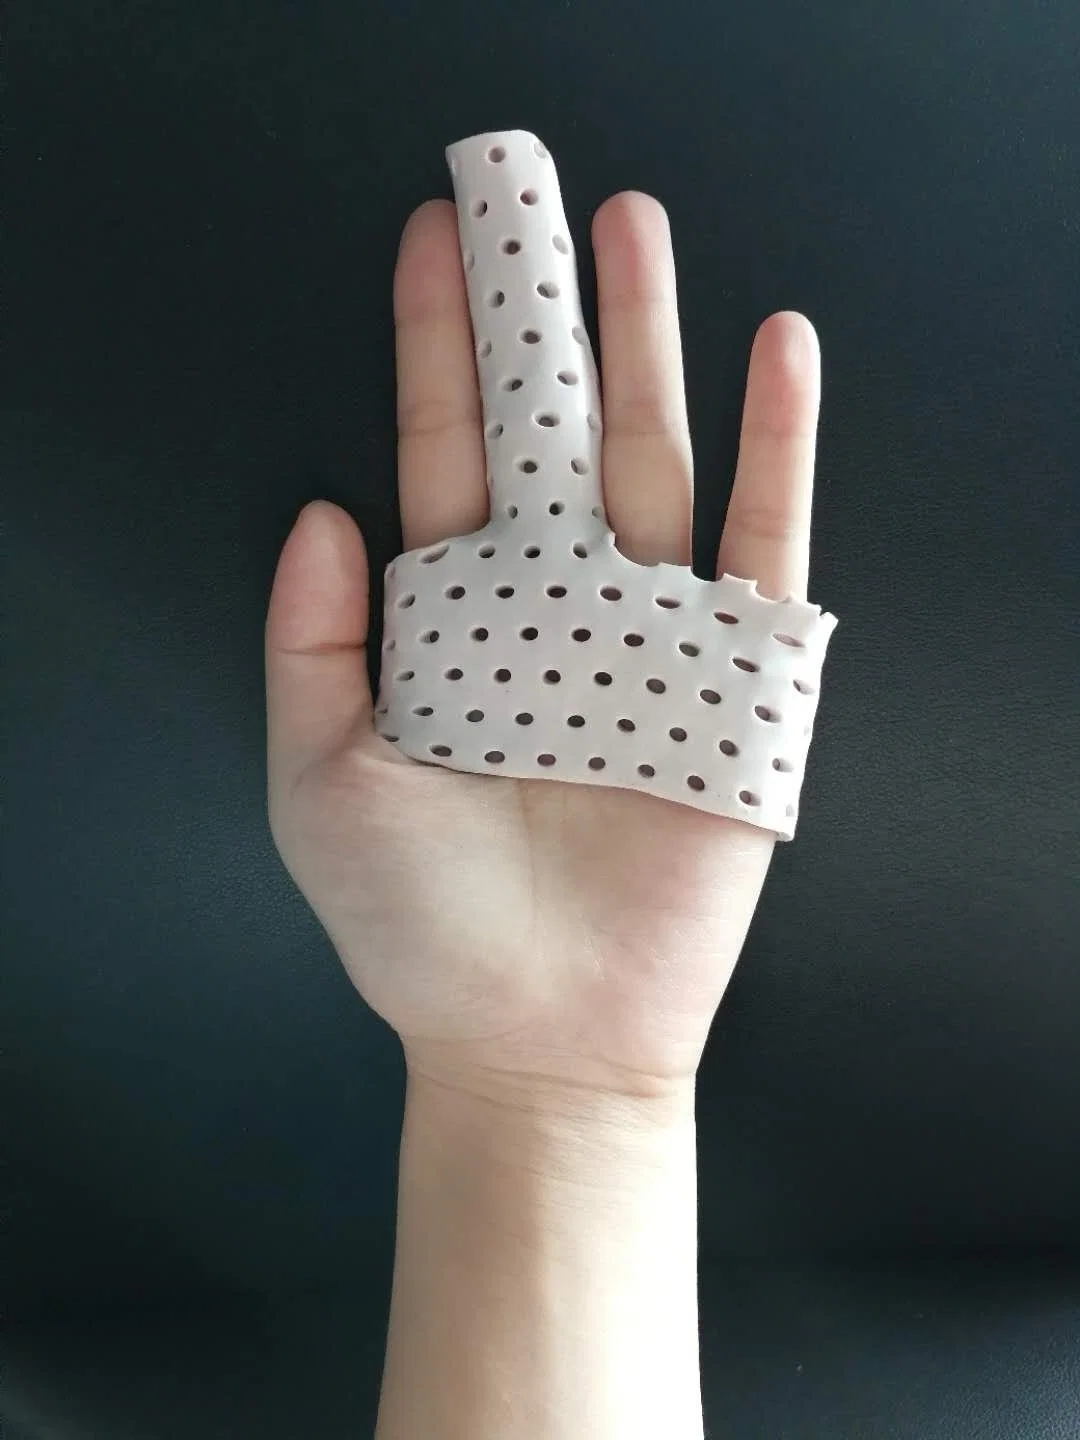 كسر تجبيرى من البلاستيك الحراري يؤدي إلى كسر جبيرة الإصبع في جهاز التعقيم الأوسط بالأصابع المكسور الجبيرة